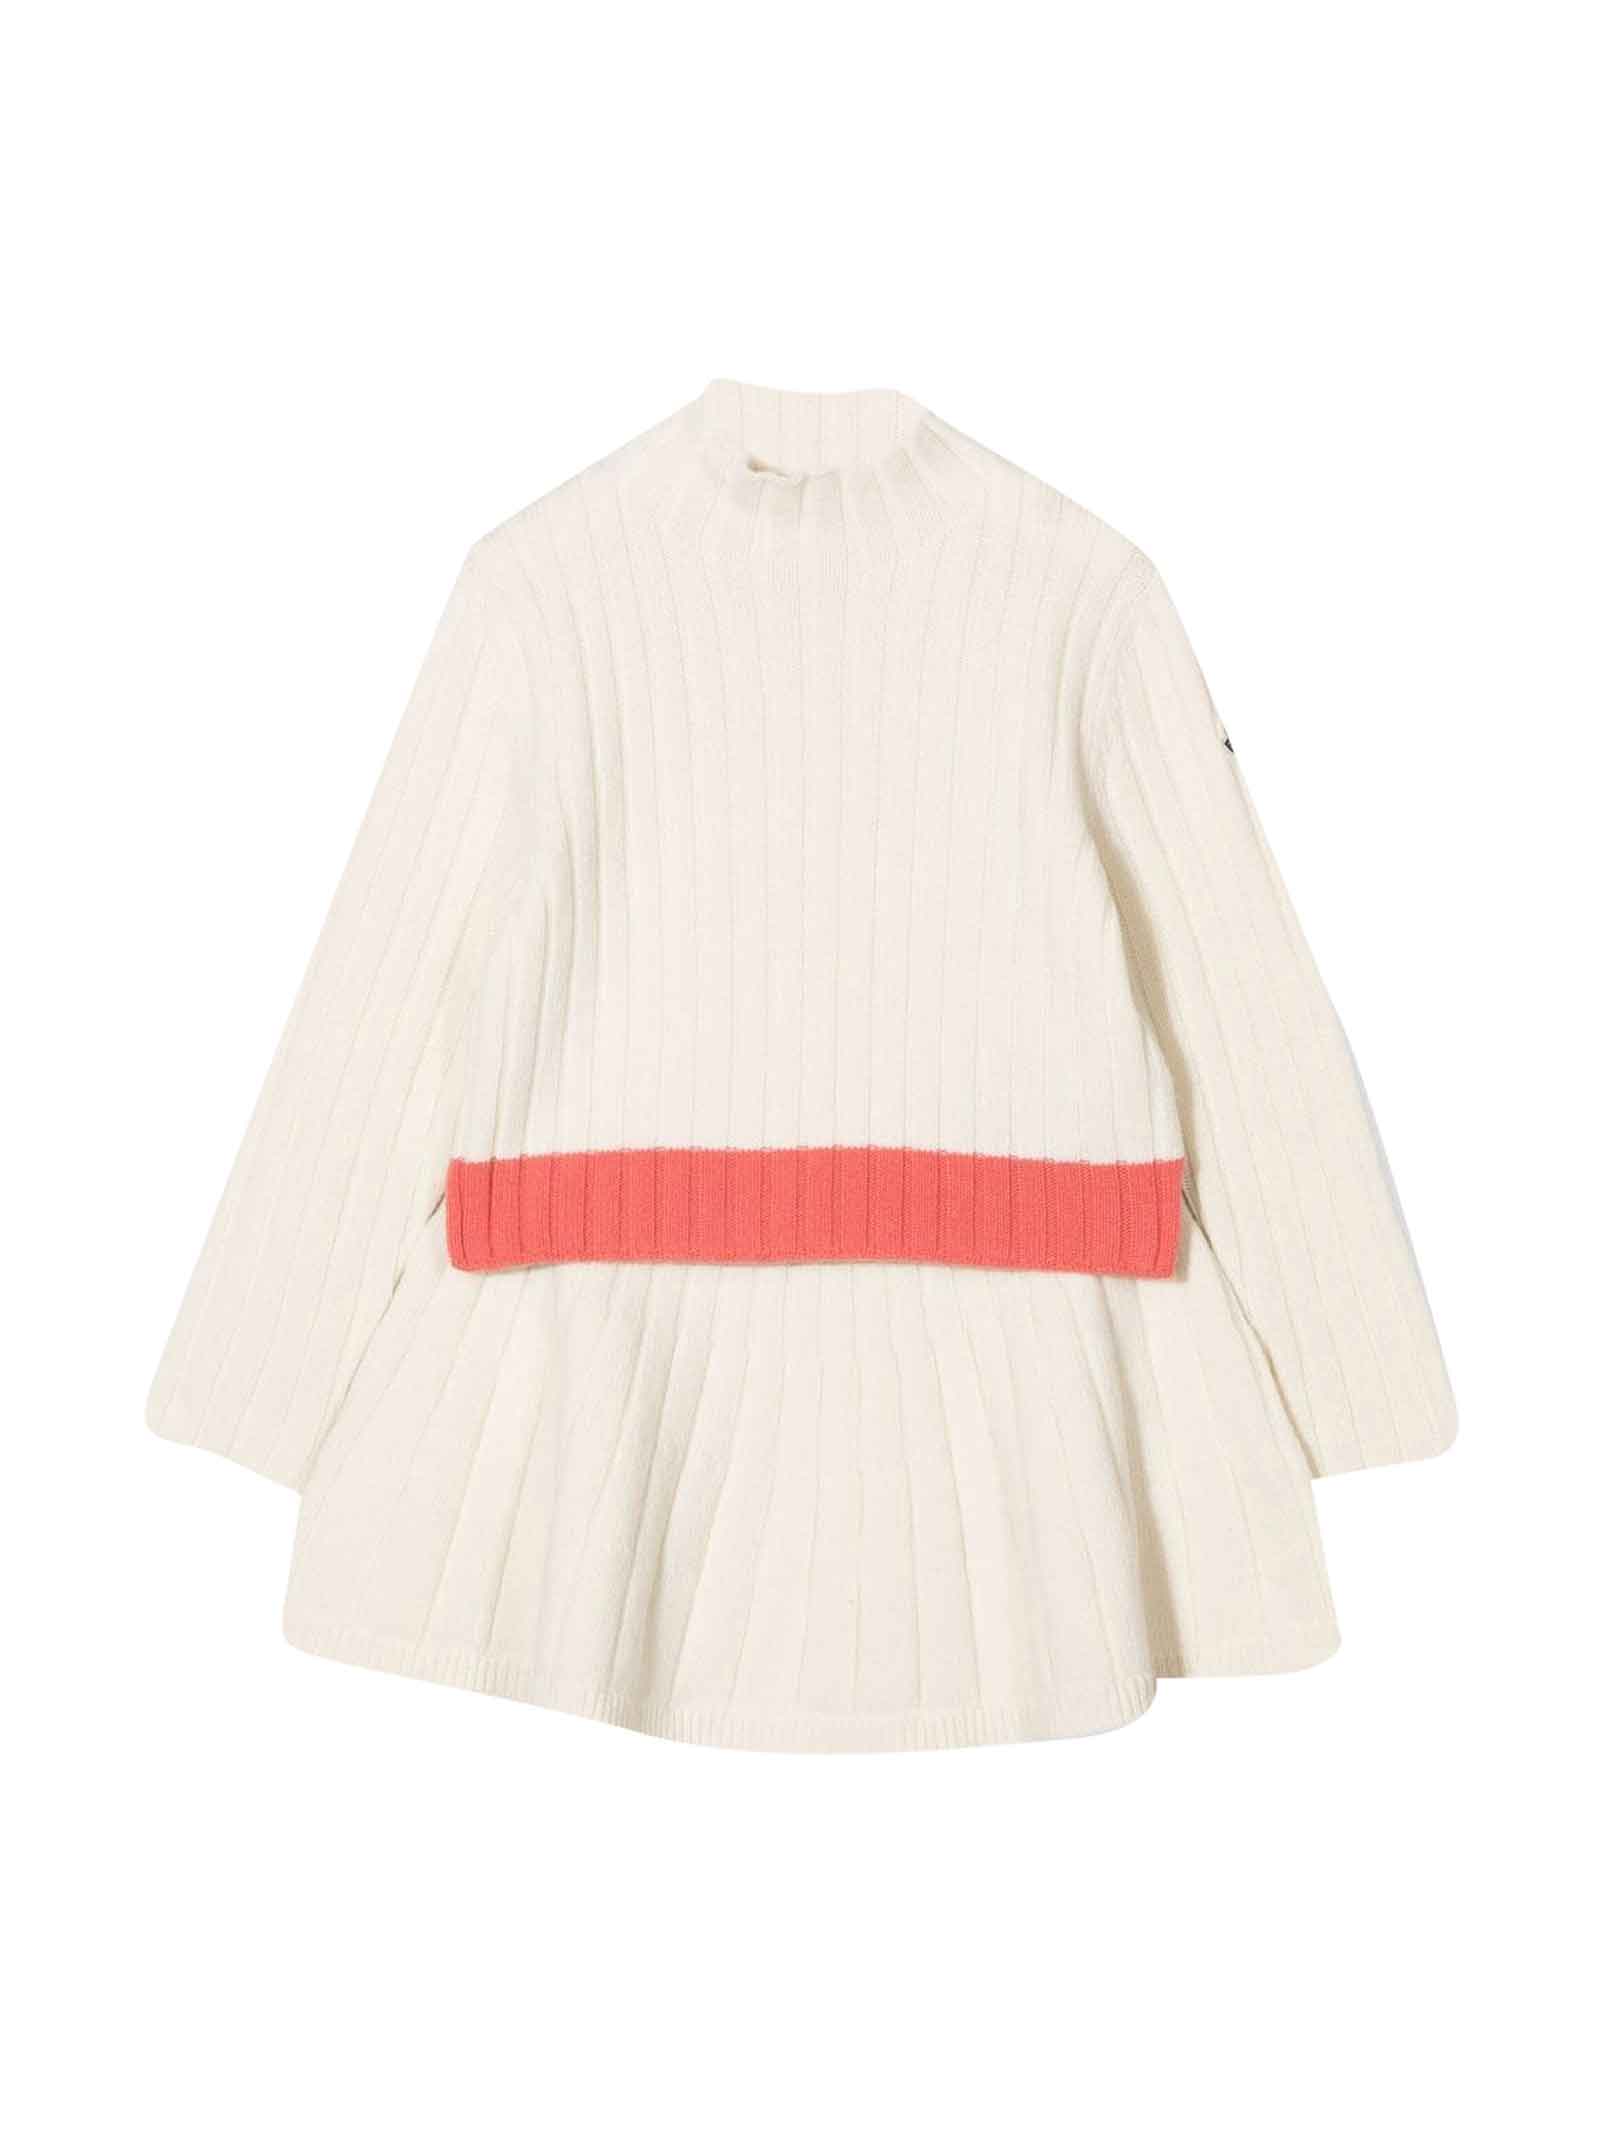 Moncler Kids' White Virgin Wool Dress In Panna